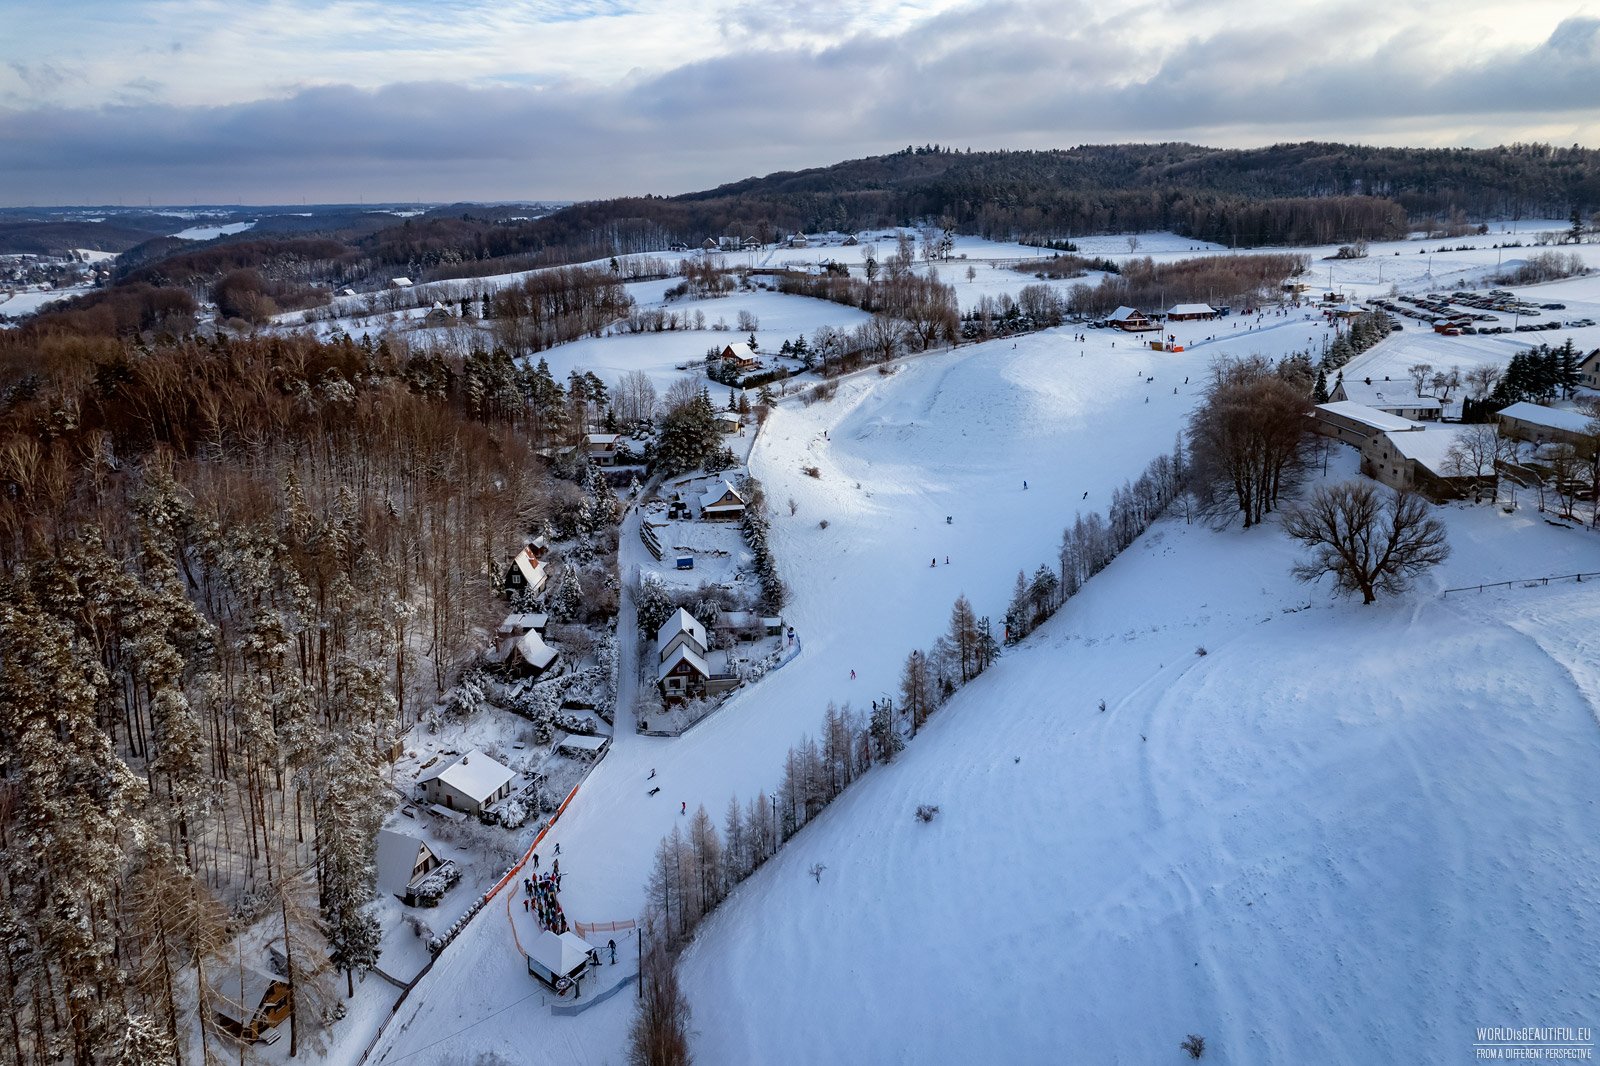 Wieżyca Kotlinaka Ski Resort in Szymbark